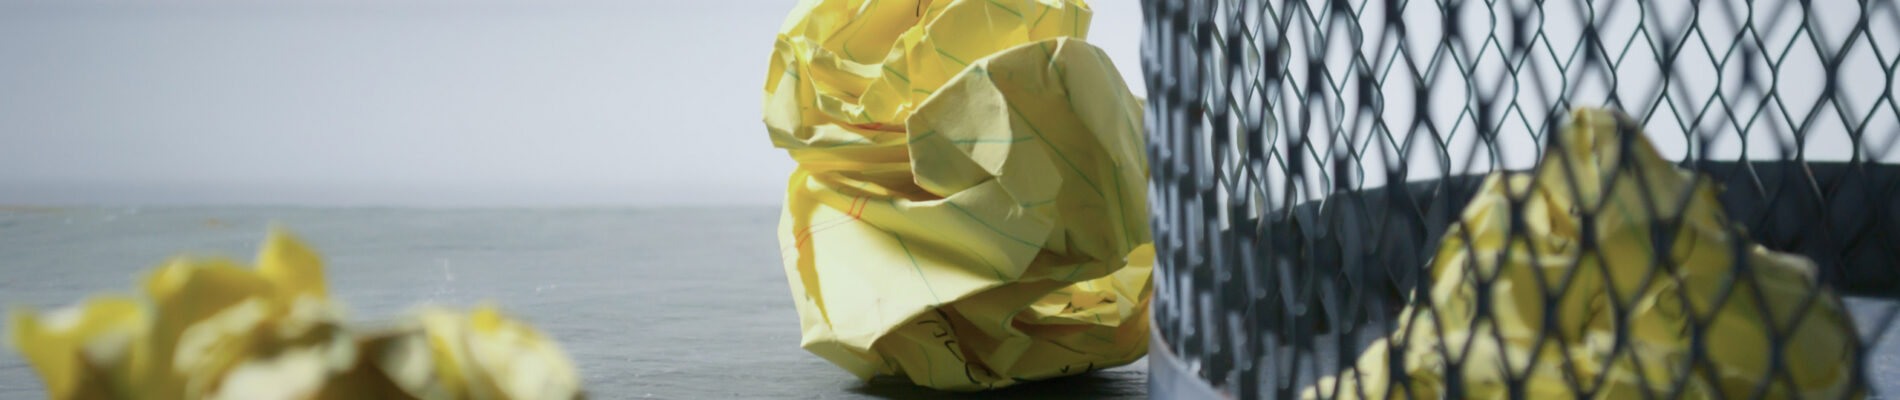 Poubelle avec des boules de papier jaune à l'intérieur et à l'extérieur.